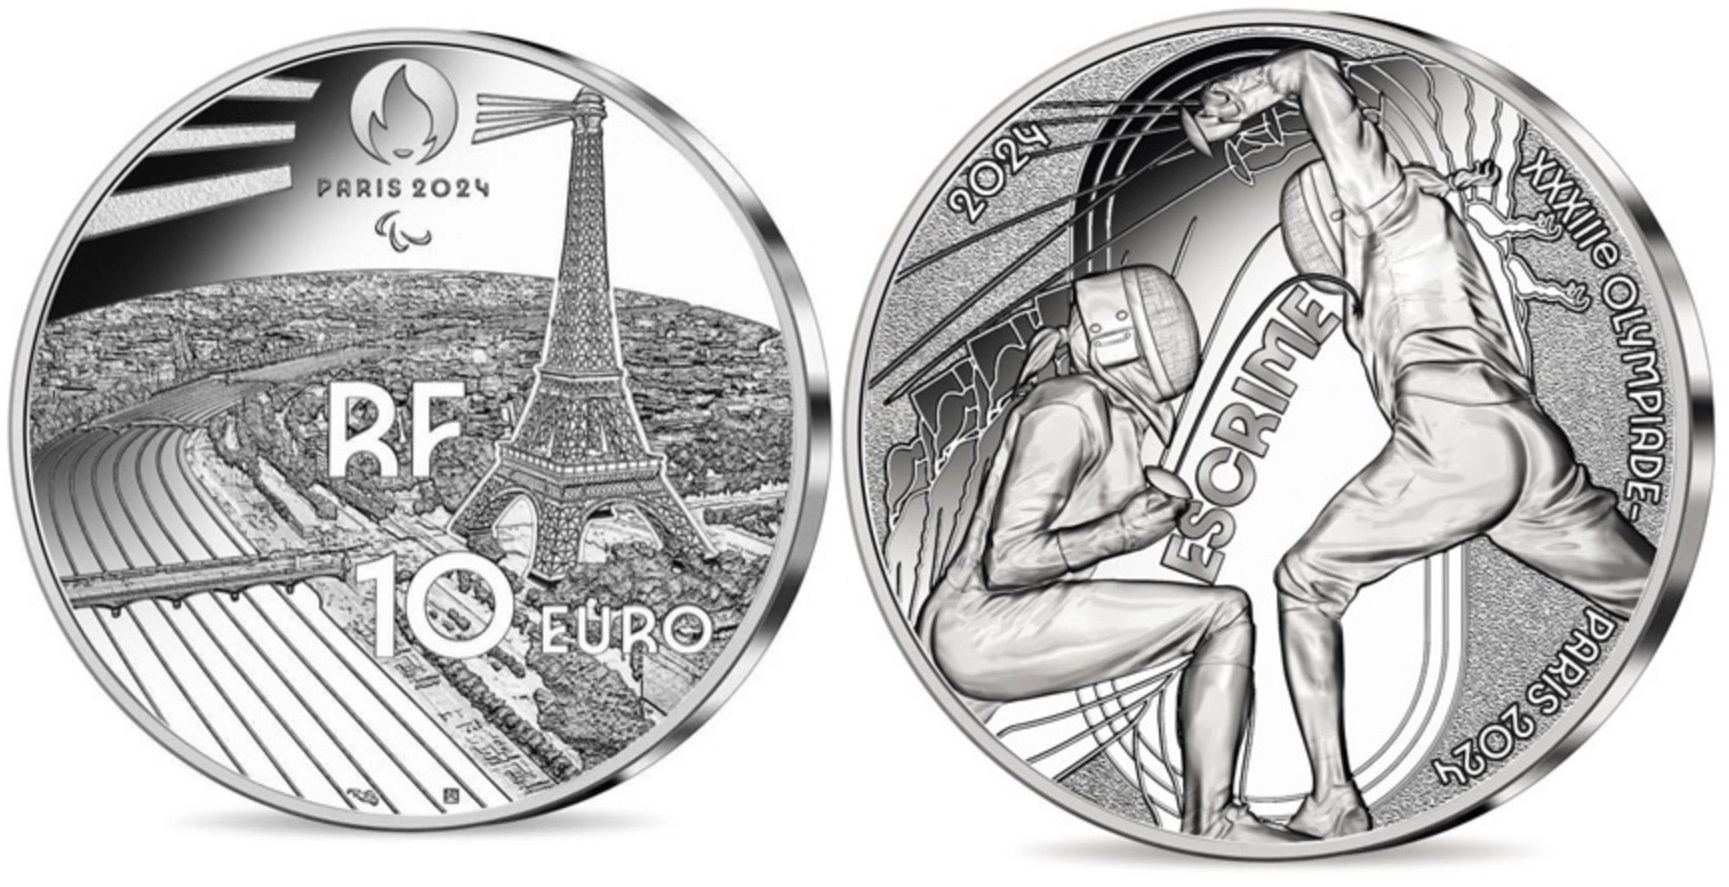 Франция представила новые монеты к Олимпиаде 2024 в Париже